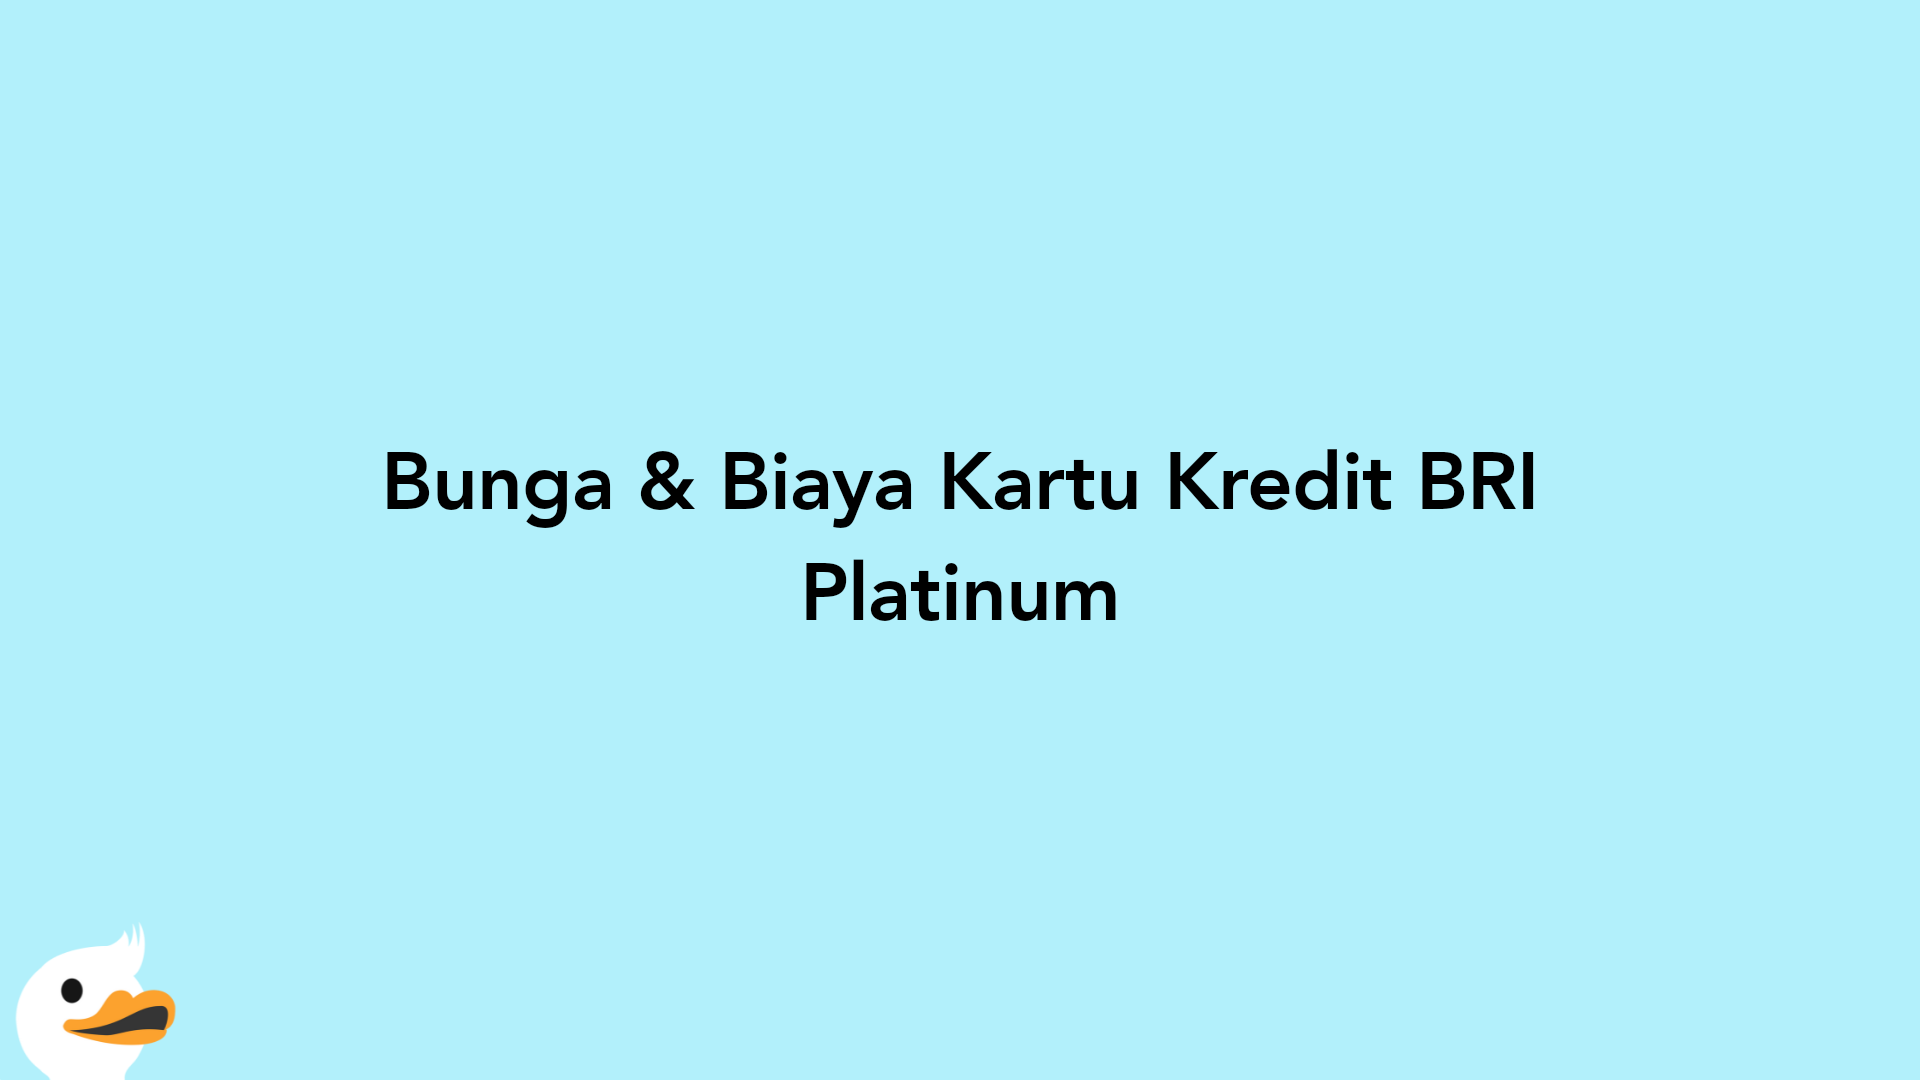 Bunga & Biaya Kartu Kredit BRI Platinum